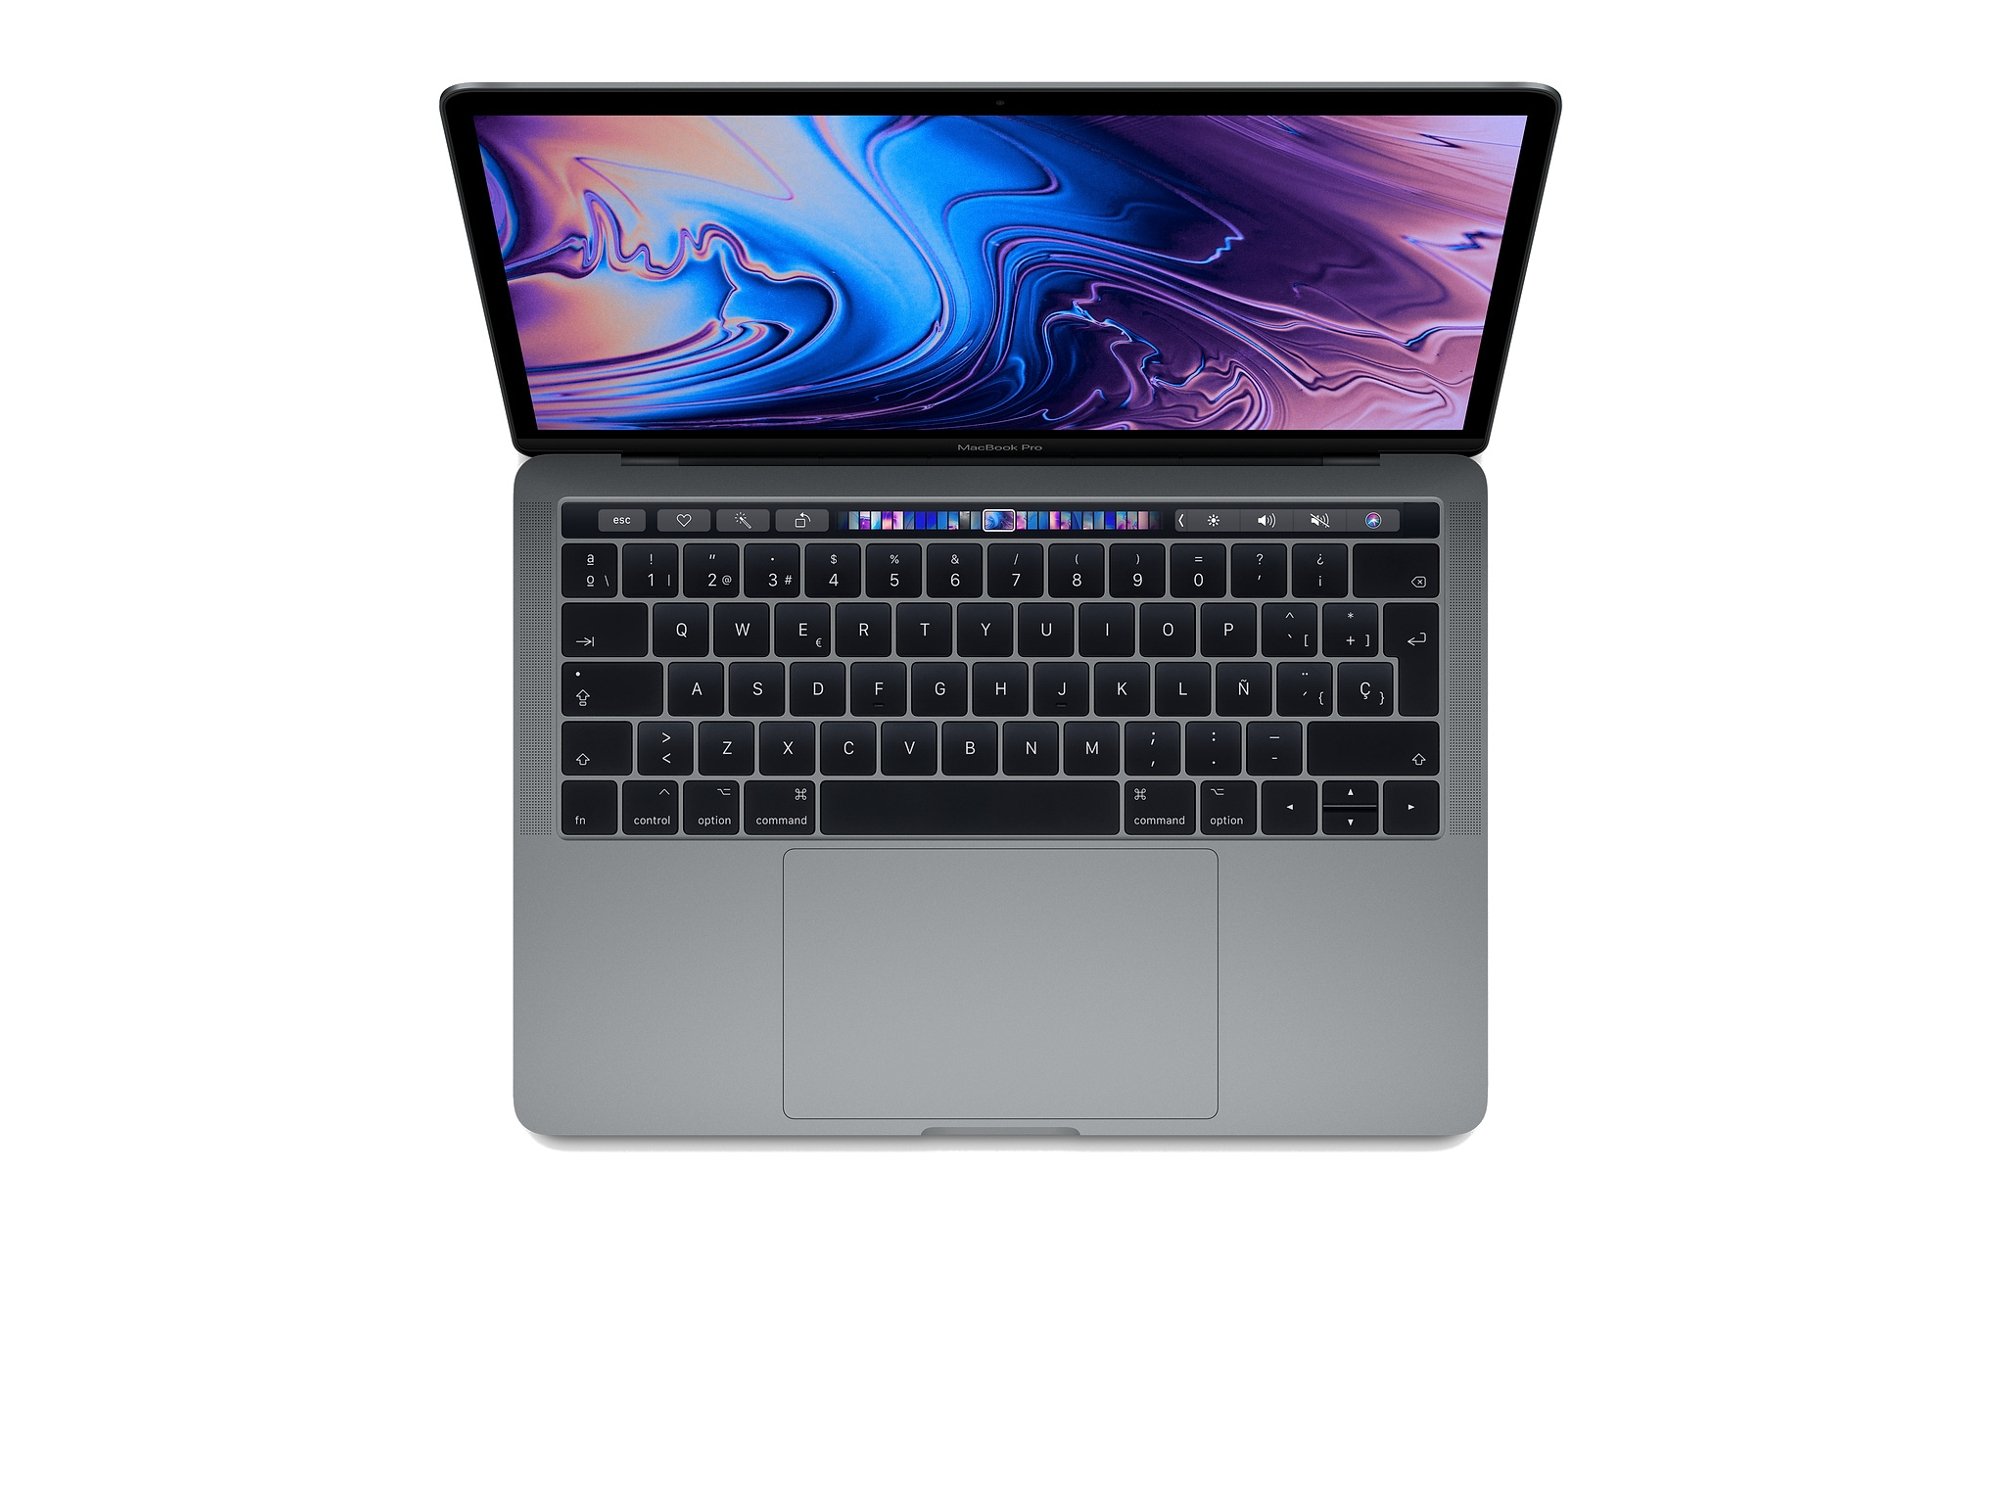 Incontable profundo río MacBook Pro APPLE Gris Espacial 2018 (13.3'' - Intel Core i5 - RAM: 8 GB -  512 GB SSD